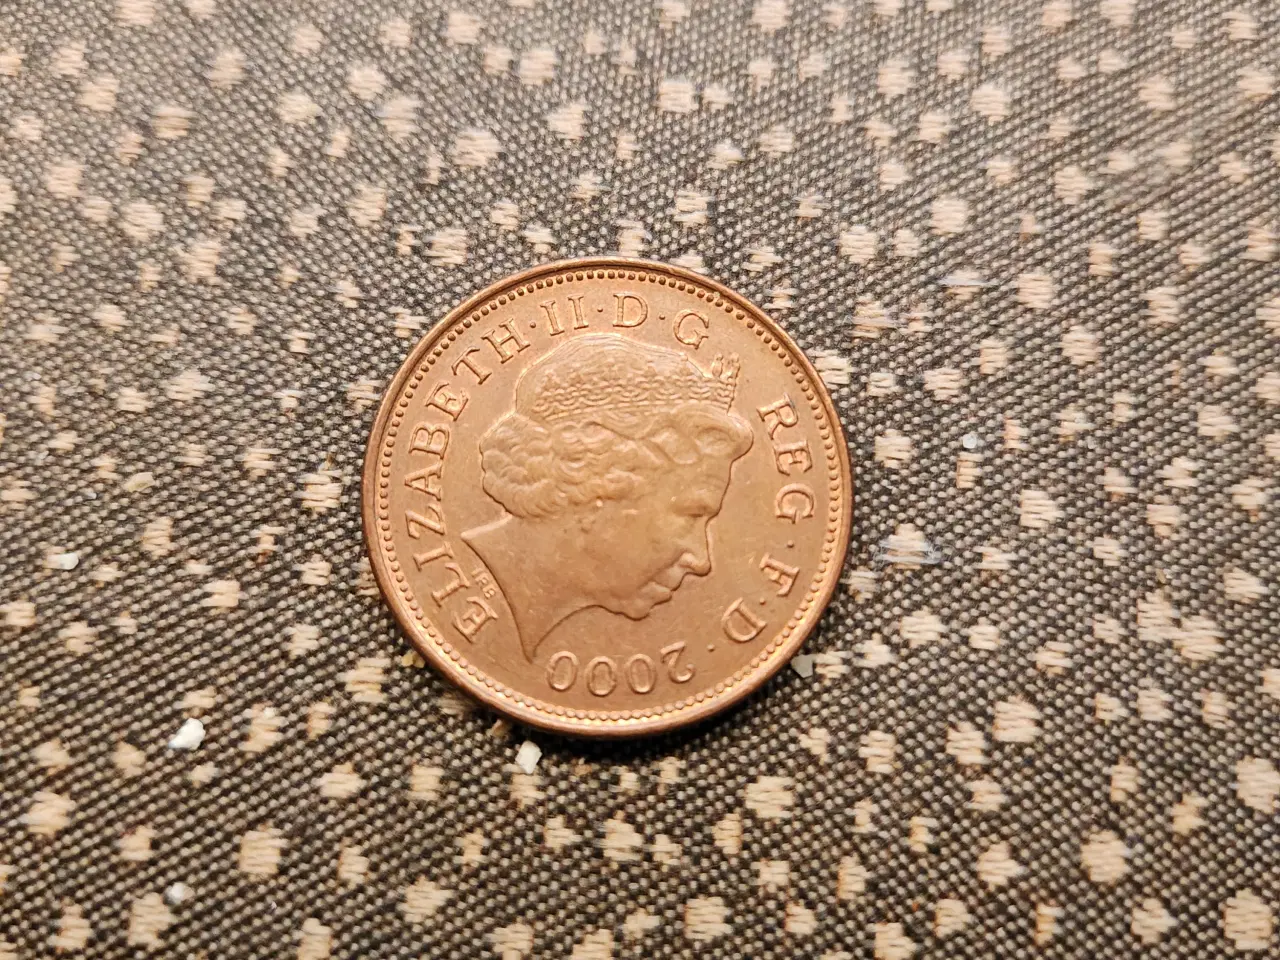 Billede 1 - Two Pence 2000, mønt fra Storbritannien